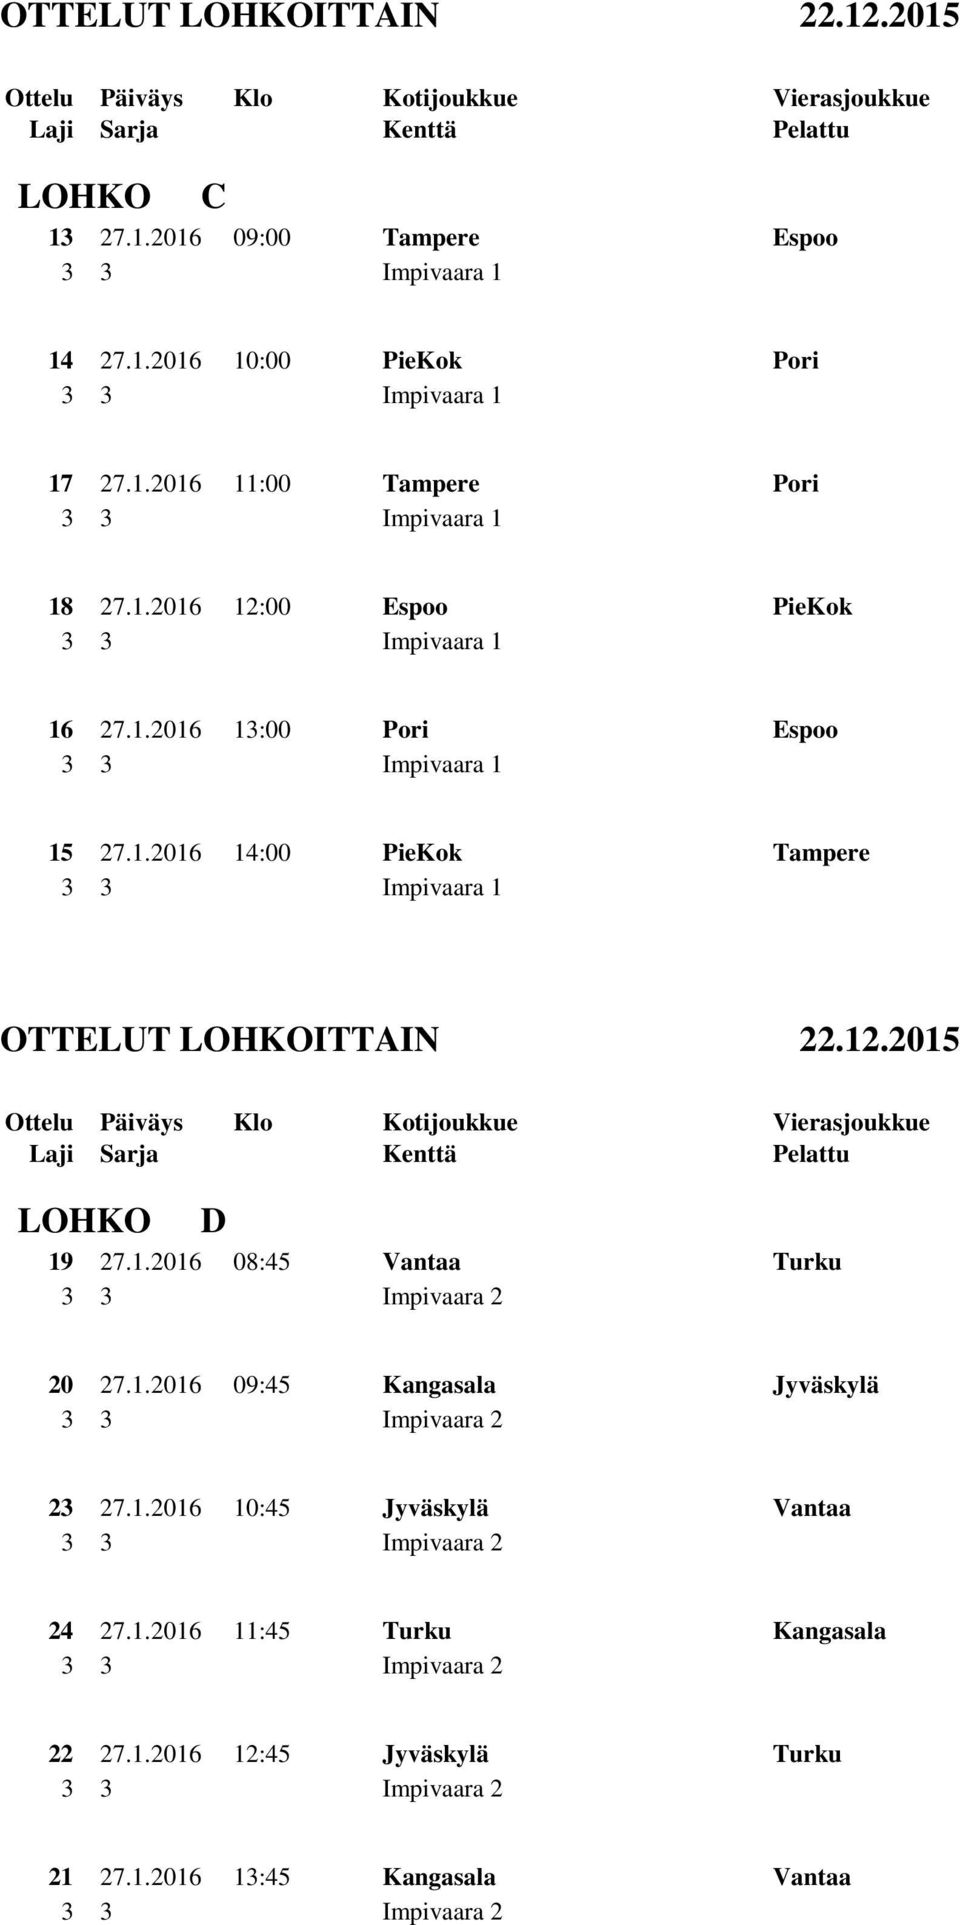 1.2016 08:45 Vantaa Turku 20 27.1.2016 09:45 Kangasala Jyväskylä 23 27.1.2016 10:45 Jyväskylä Vantaa 24 27.